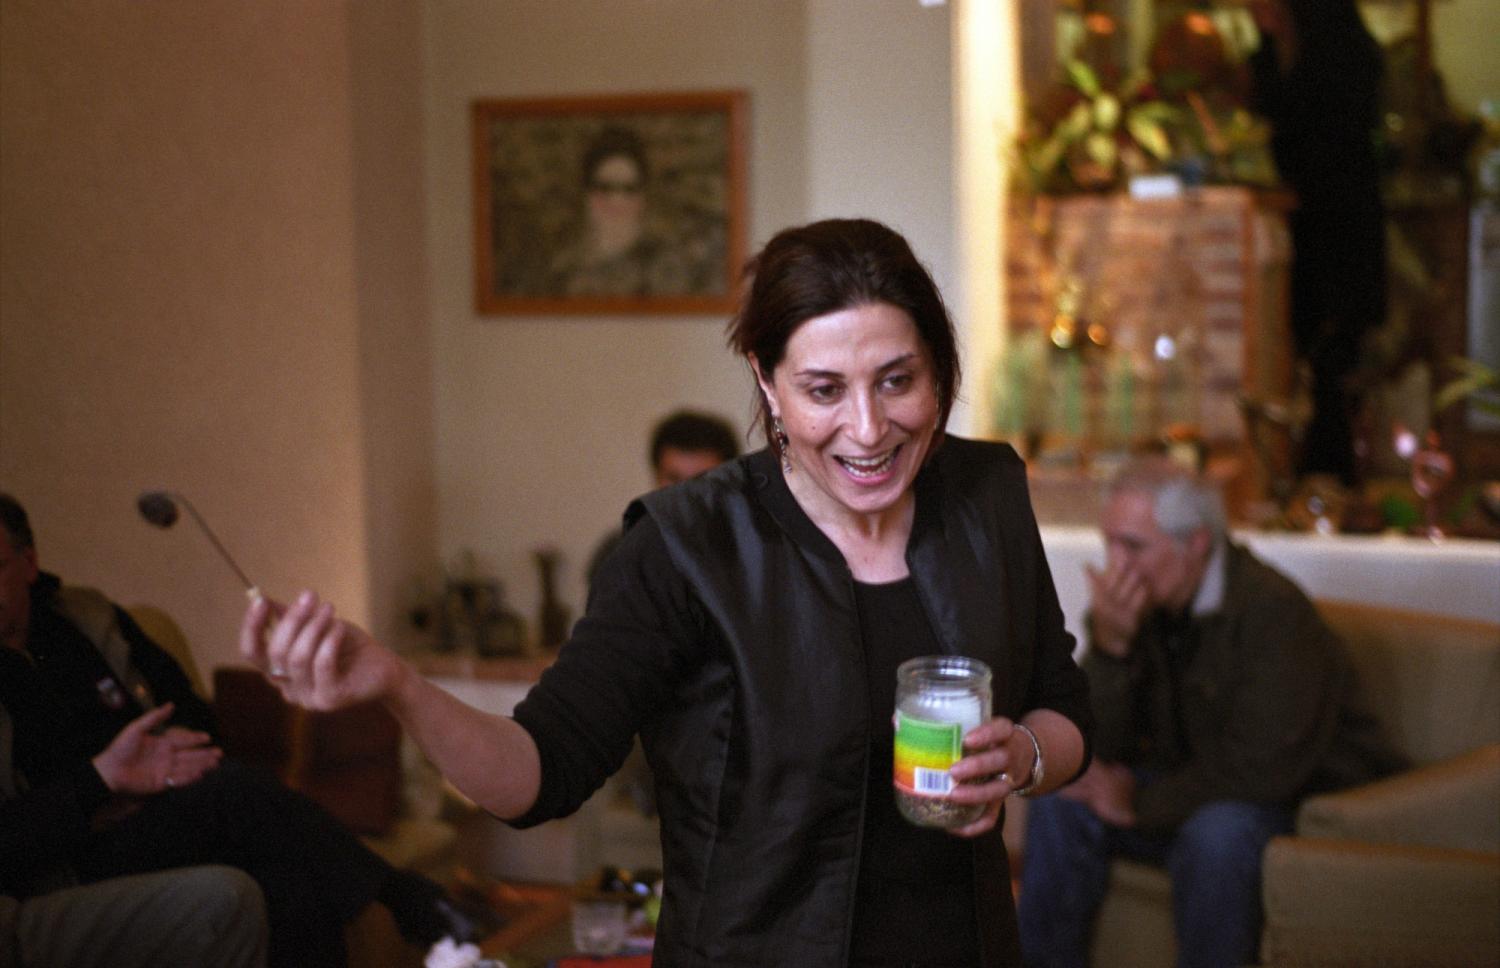 Fatemeh Motamedarya dans son salon avec des amis, un pot d'encens à la main en l'honneur de la fête d'Achourra. Téhéran, Iran, janvier 2007.